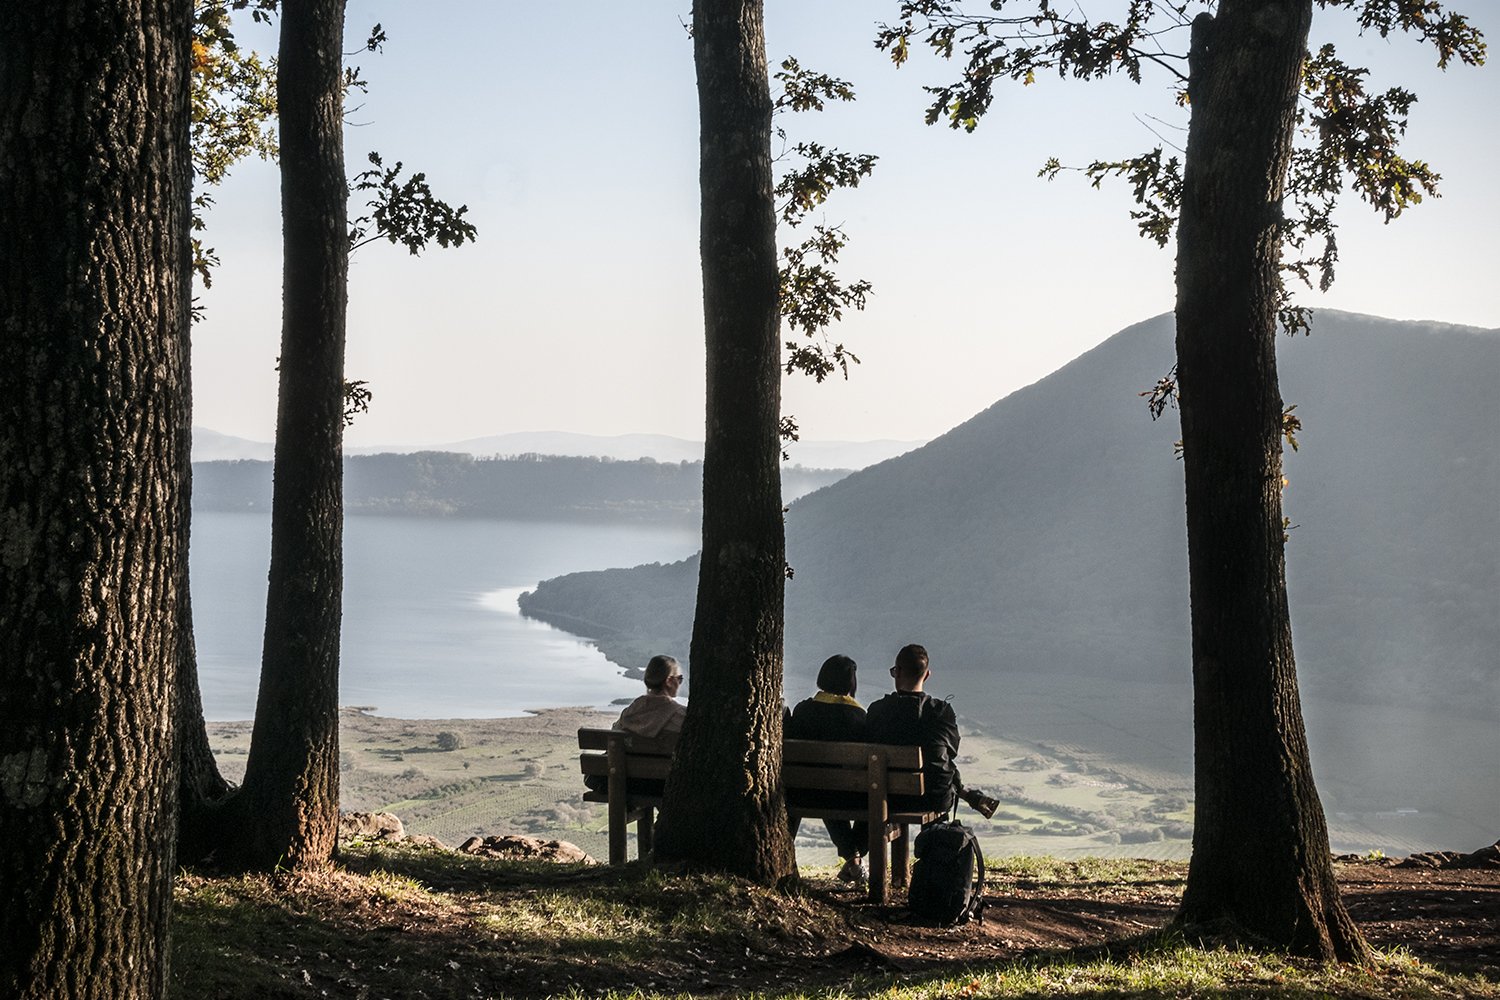  La riserva naturale del Lago di Vico resta sempre una meta attraente per il turismo, nonostante la situazione ambientale critica. Caprarola (Viterbo), ottobre 2022. 